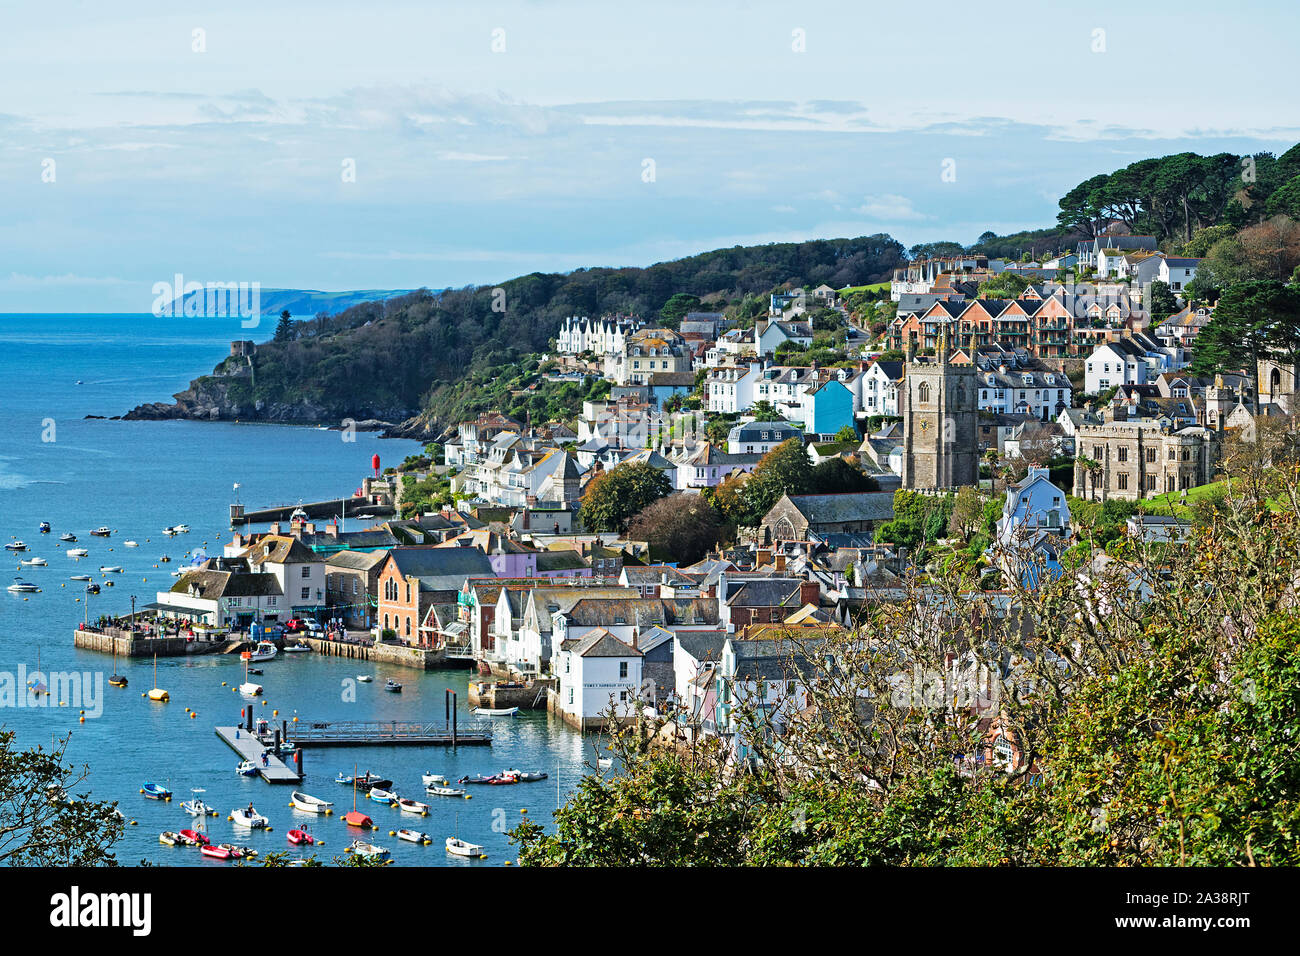 La ville côtière de fowey à Cornwall, en Angleterre, Grande-Bretagne, Royaume-Uni. Banque D'Images